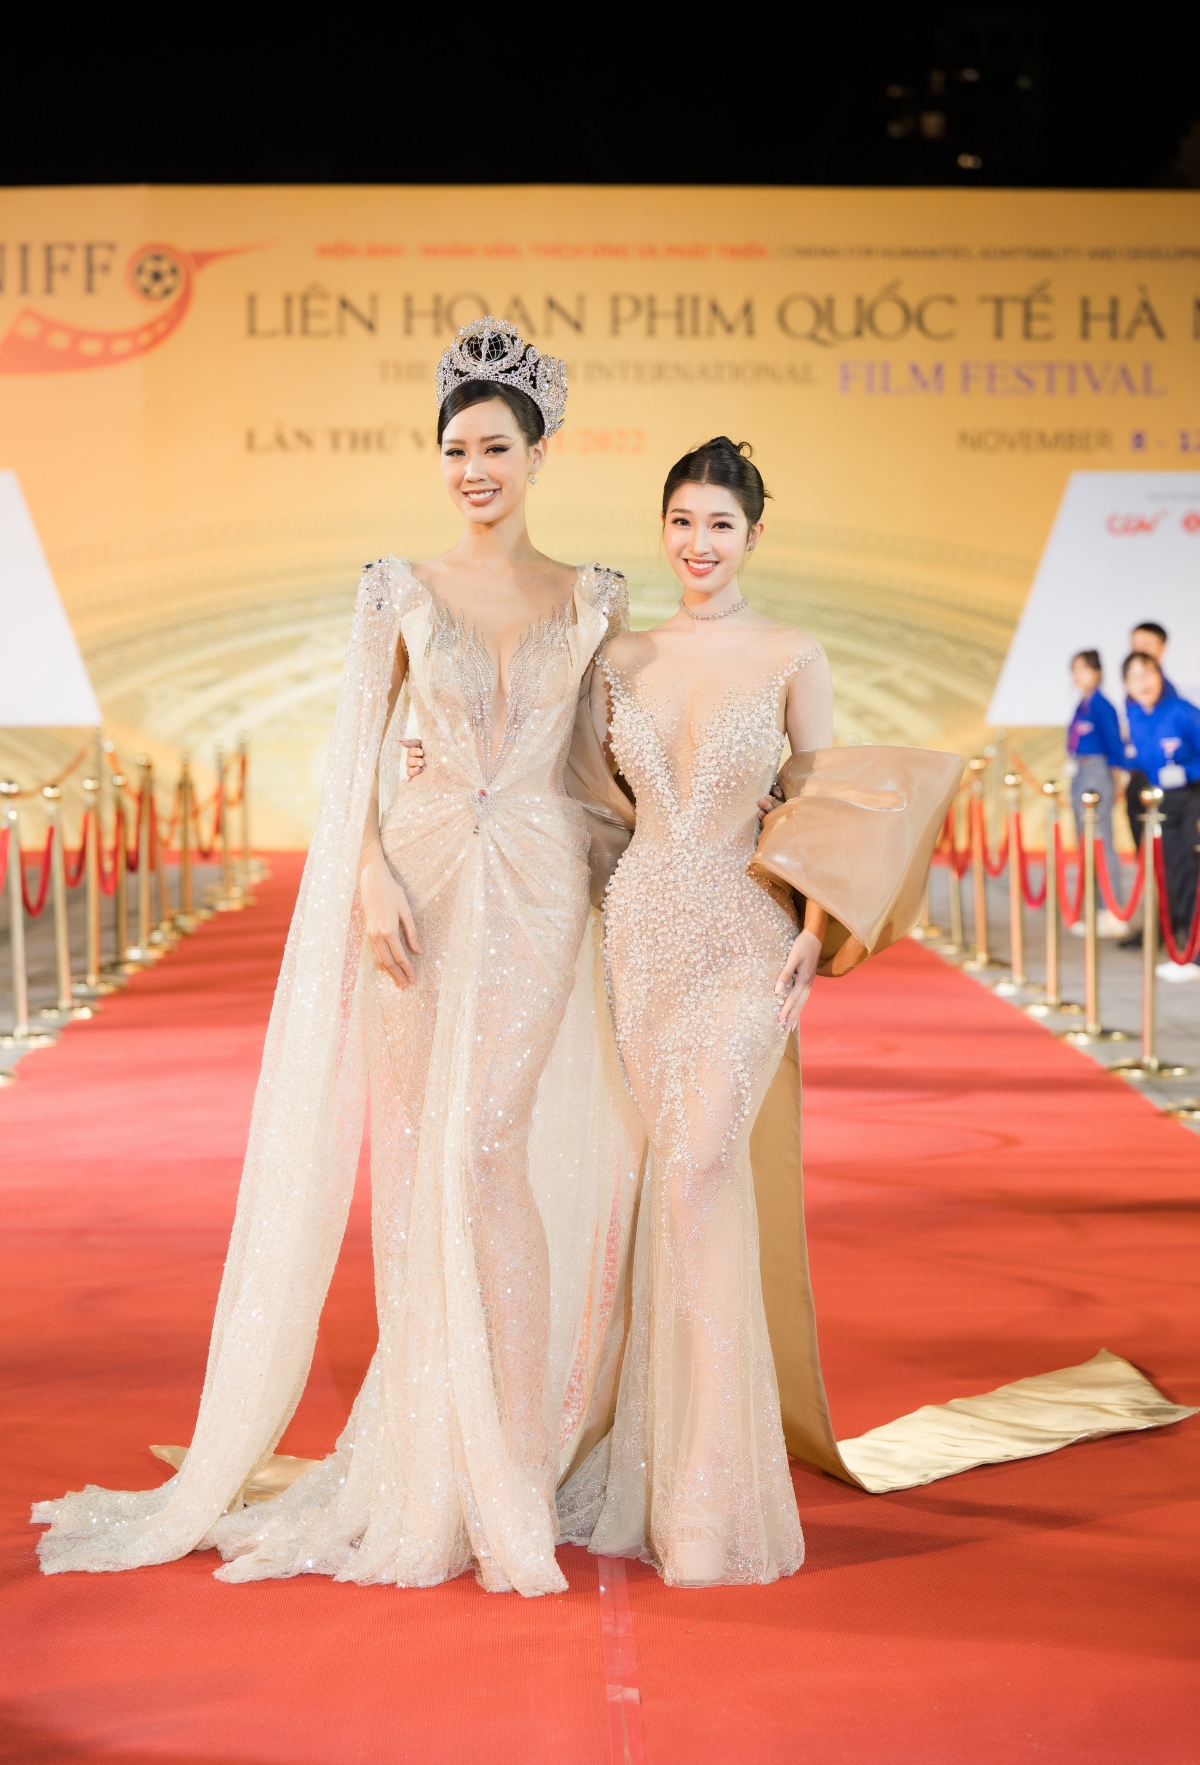 Dàn hoa hậu lộng lẫy trên thảm đỏ bế mạc Liên hoan phim quốc tế Hà Nội 2022